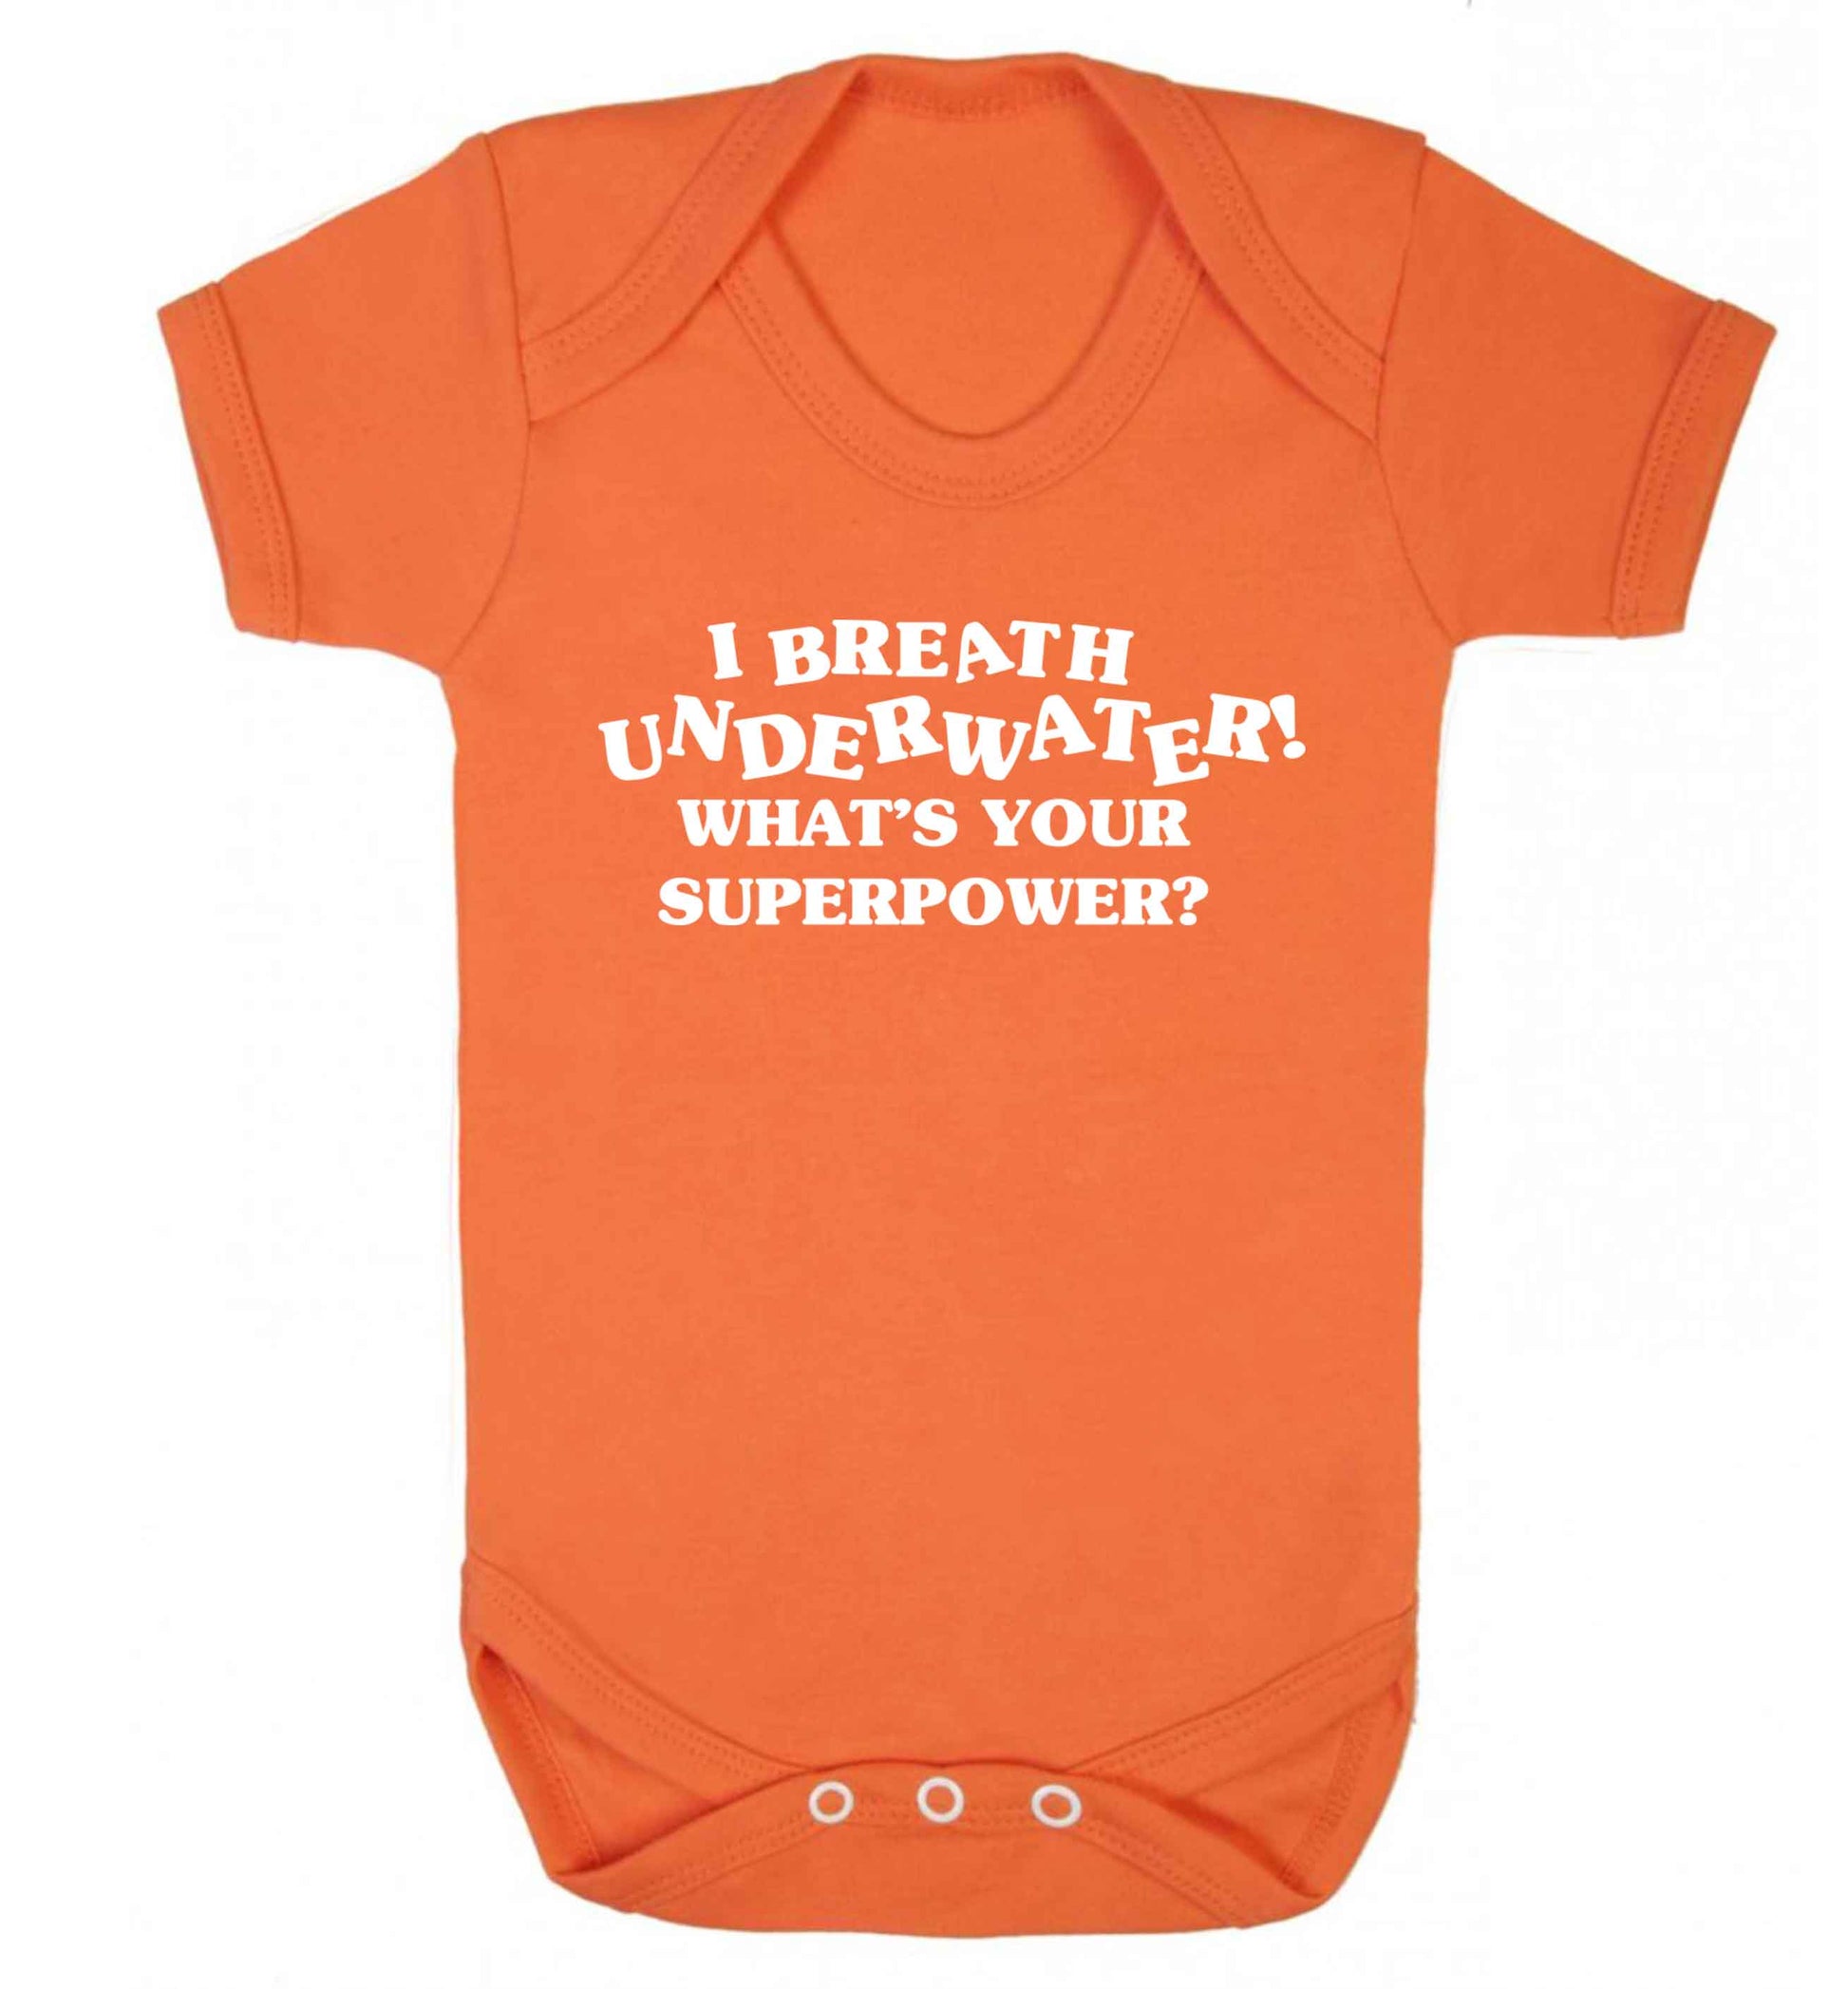 I breath underwater what's your superpower? Baby Vest orange 18-24 months